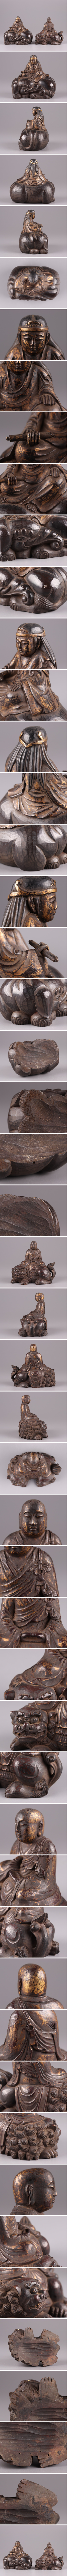 今月限定仏教美術 時代木彫 塗金 文殊菩薩 普賢菩薩 仏像 一対 古作 時代物 極上品 初だし品 2681 仏像